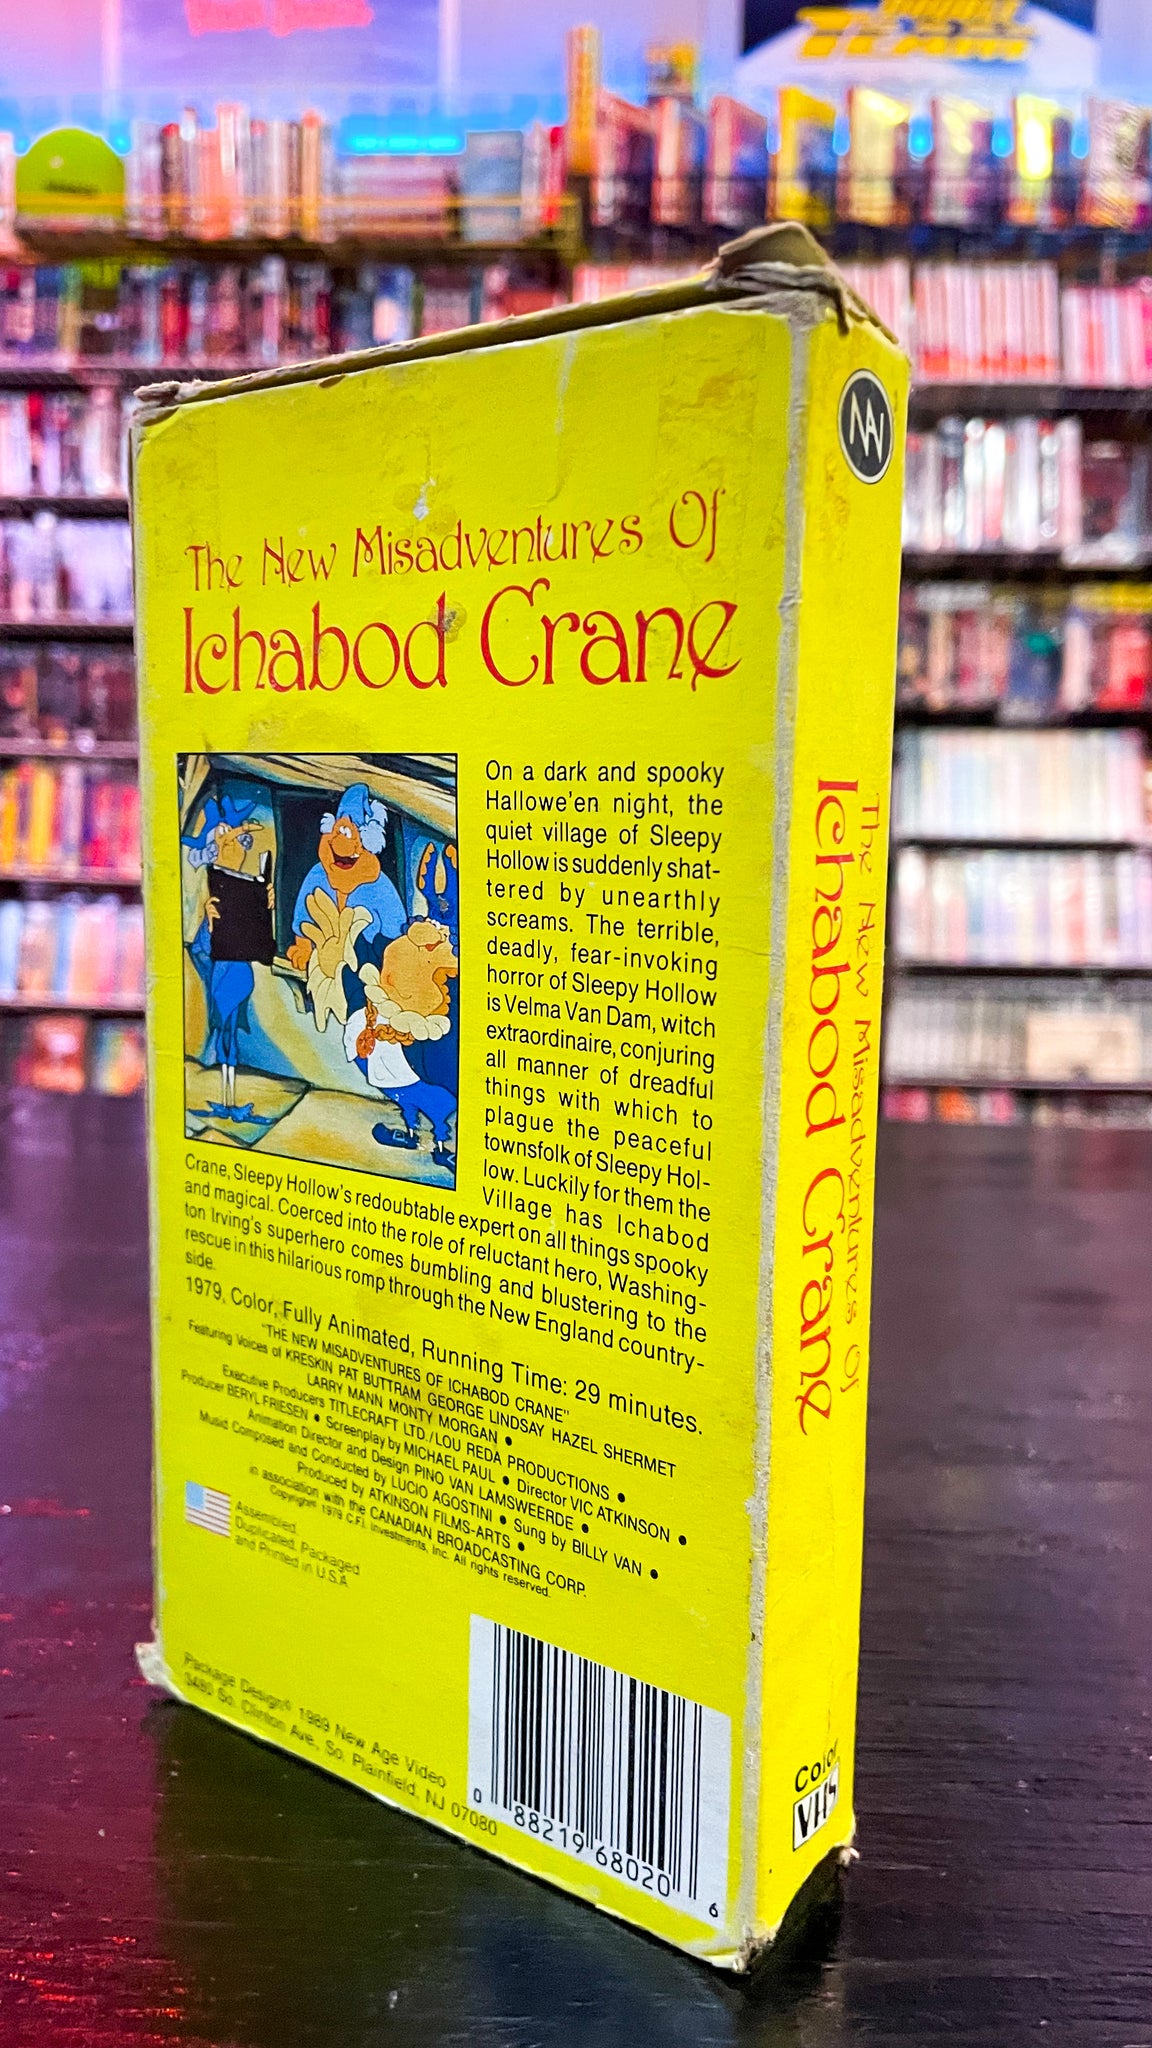 The New Misadventures of Ichabod Crane